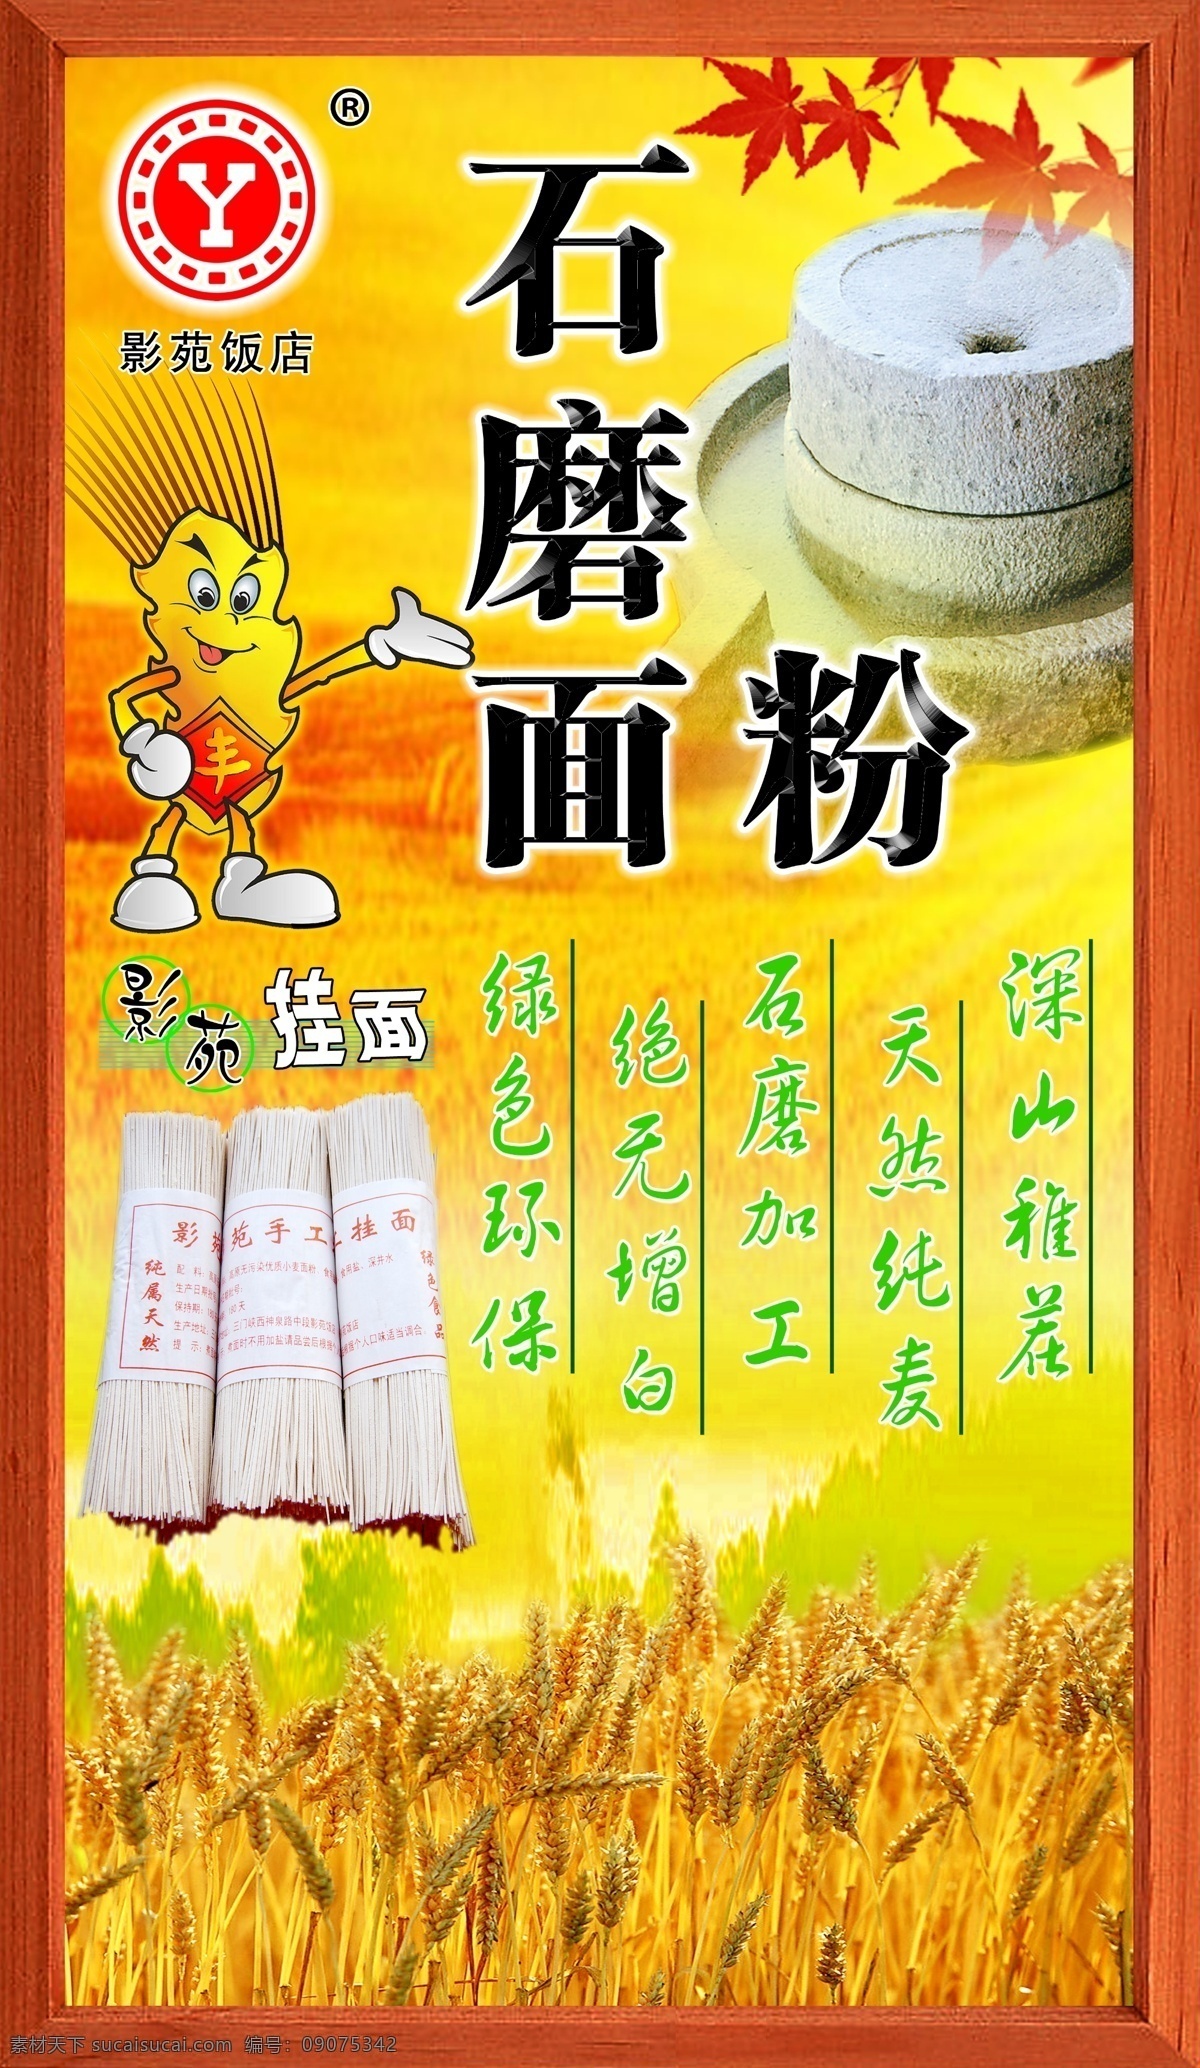 石磨面粉 小米 小麦 麦穗 包装设计 食物 菜单菜谱 广告设计模板 源文件